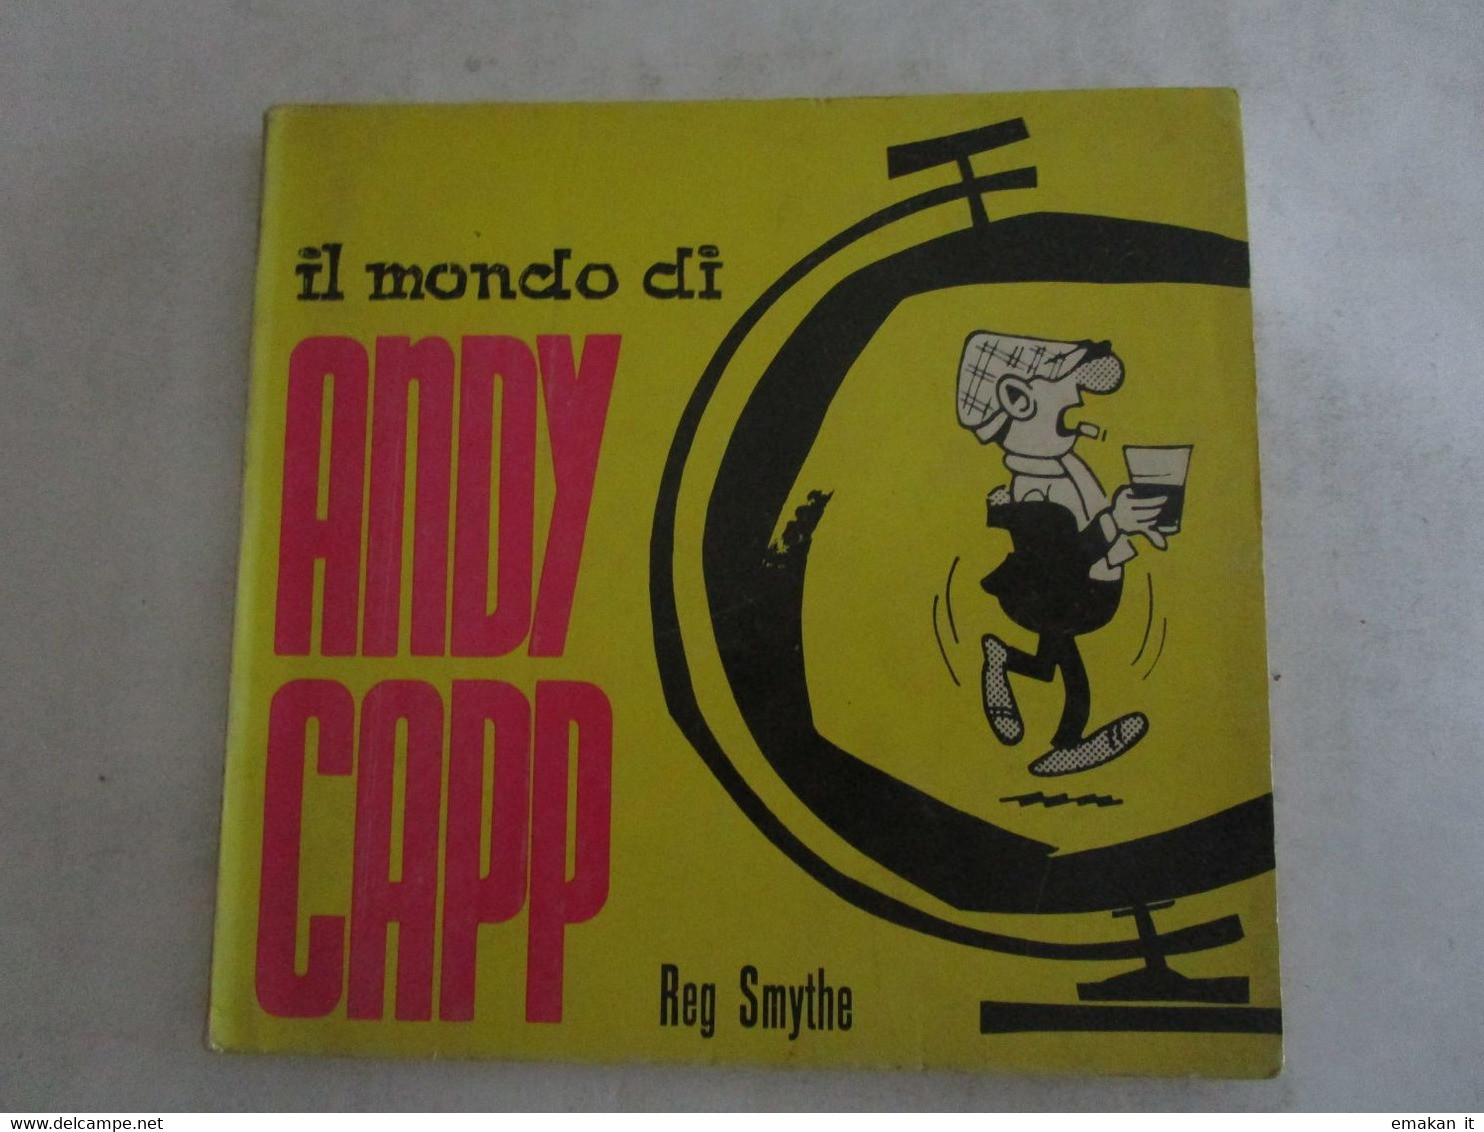 # IL MONDO DI ANDY CAPP / CORNO 1968 / SUPPLEMENTO AL N 10 DI EUREKA - First Editions